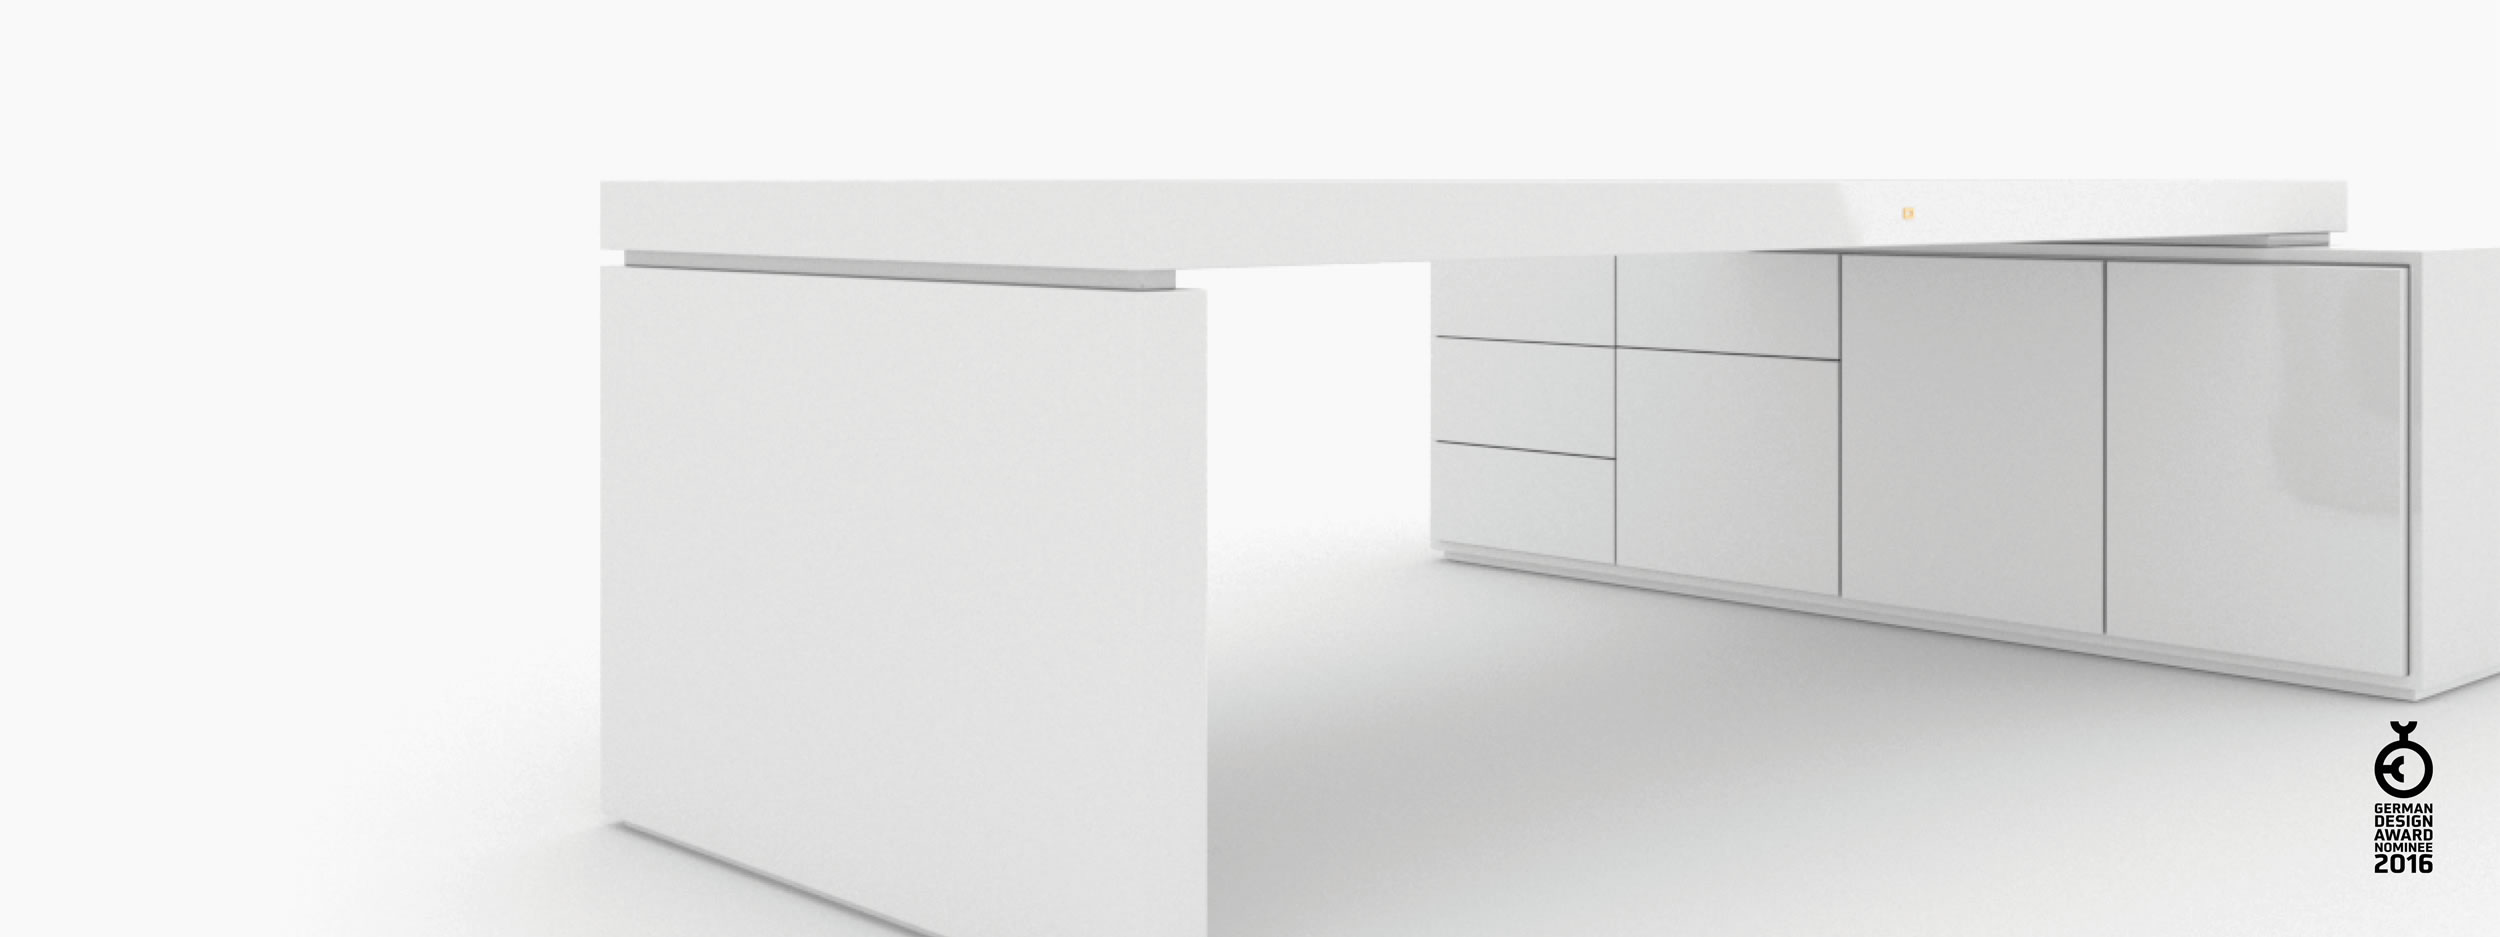 Schreibtisch scheiben und quader weiss designcrush Chefzimmer interior home Schreibtische FS 93 FELIX SCHWAKE RECHTECK